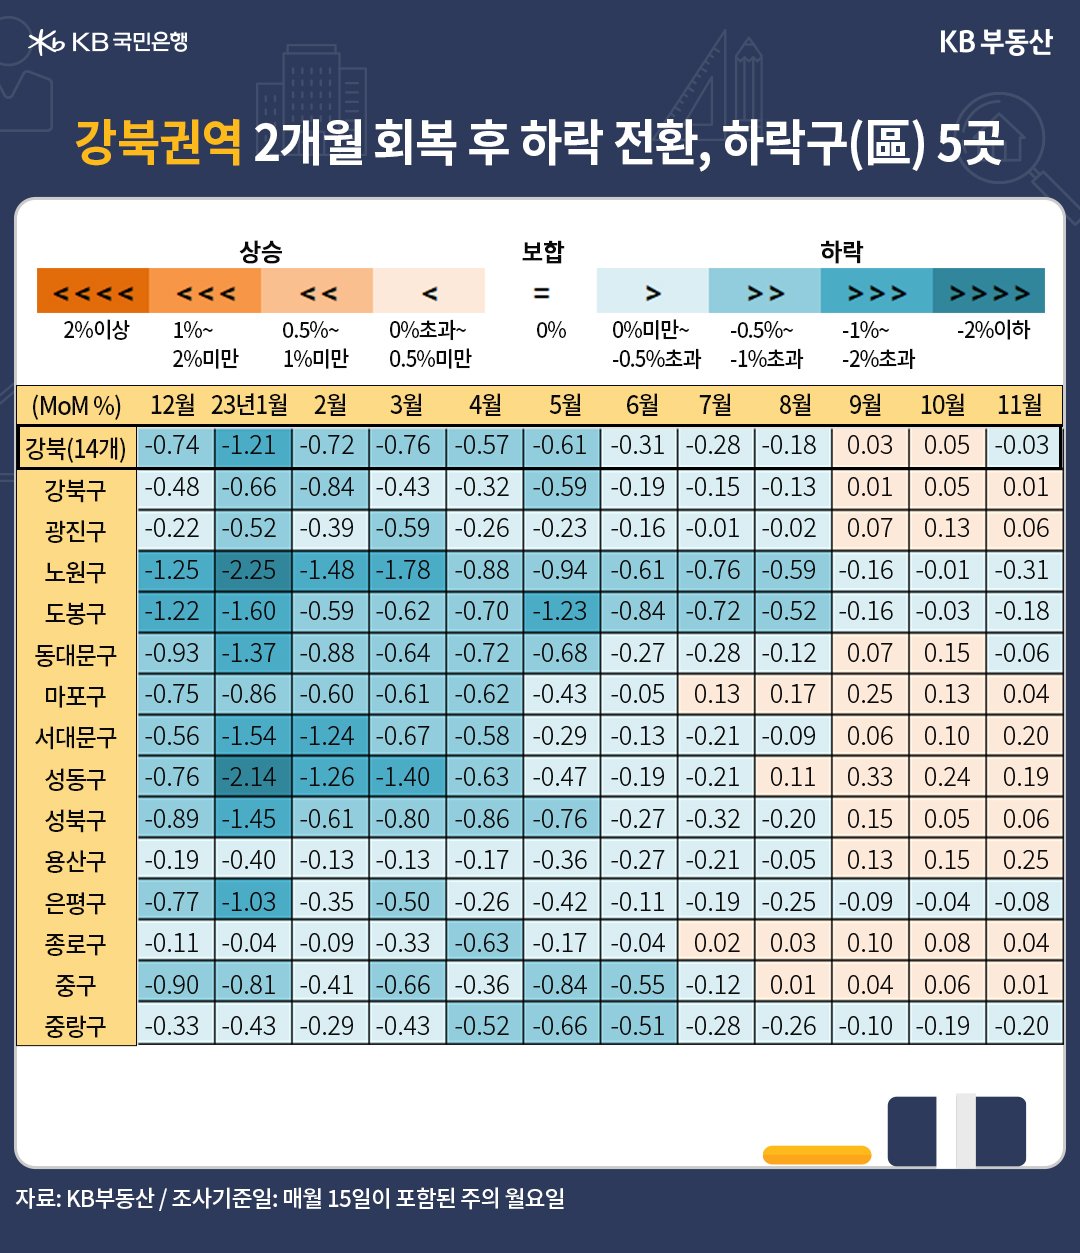 강북권역 14개구 주택매매가격의 월별 증감률이 나타난 표. 